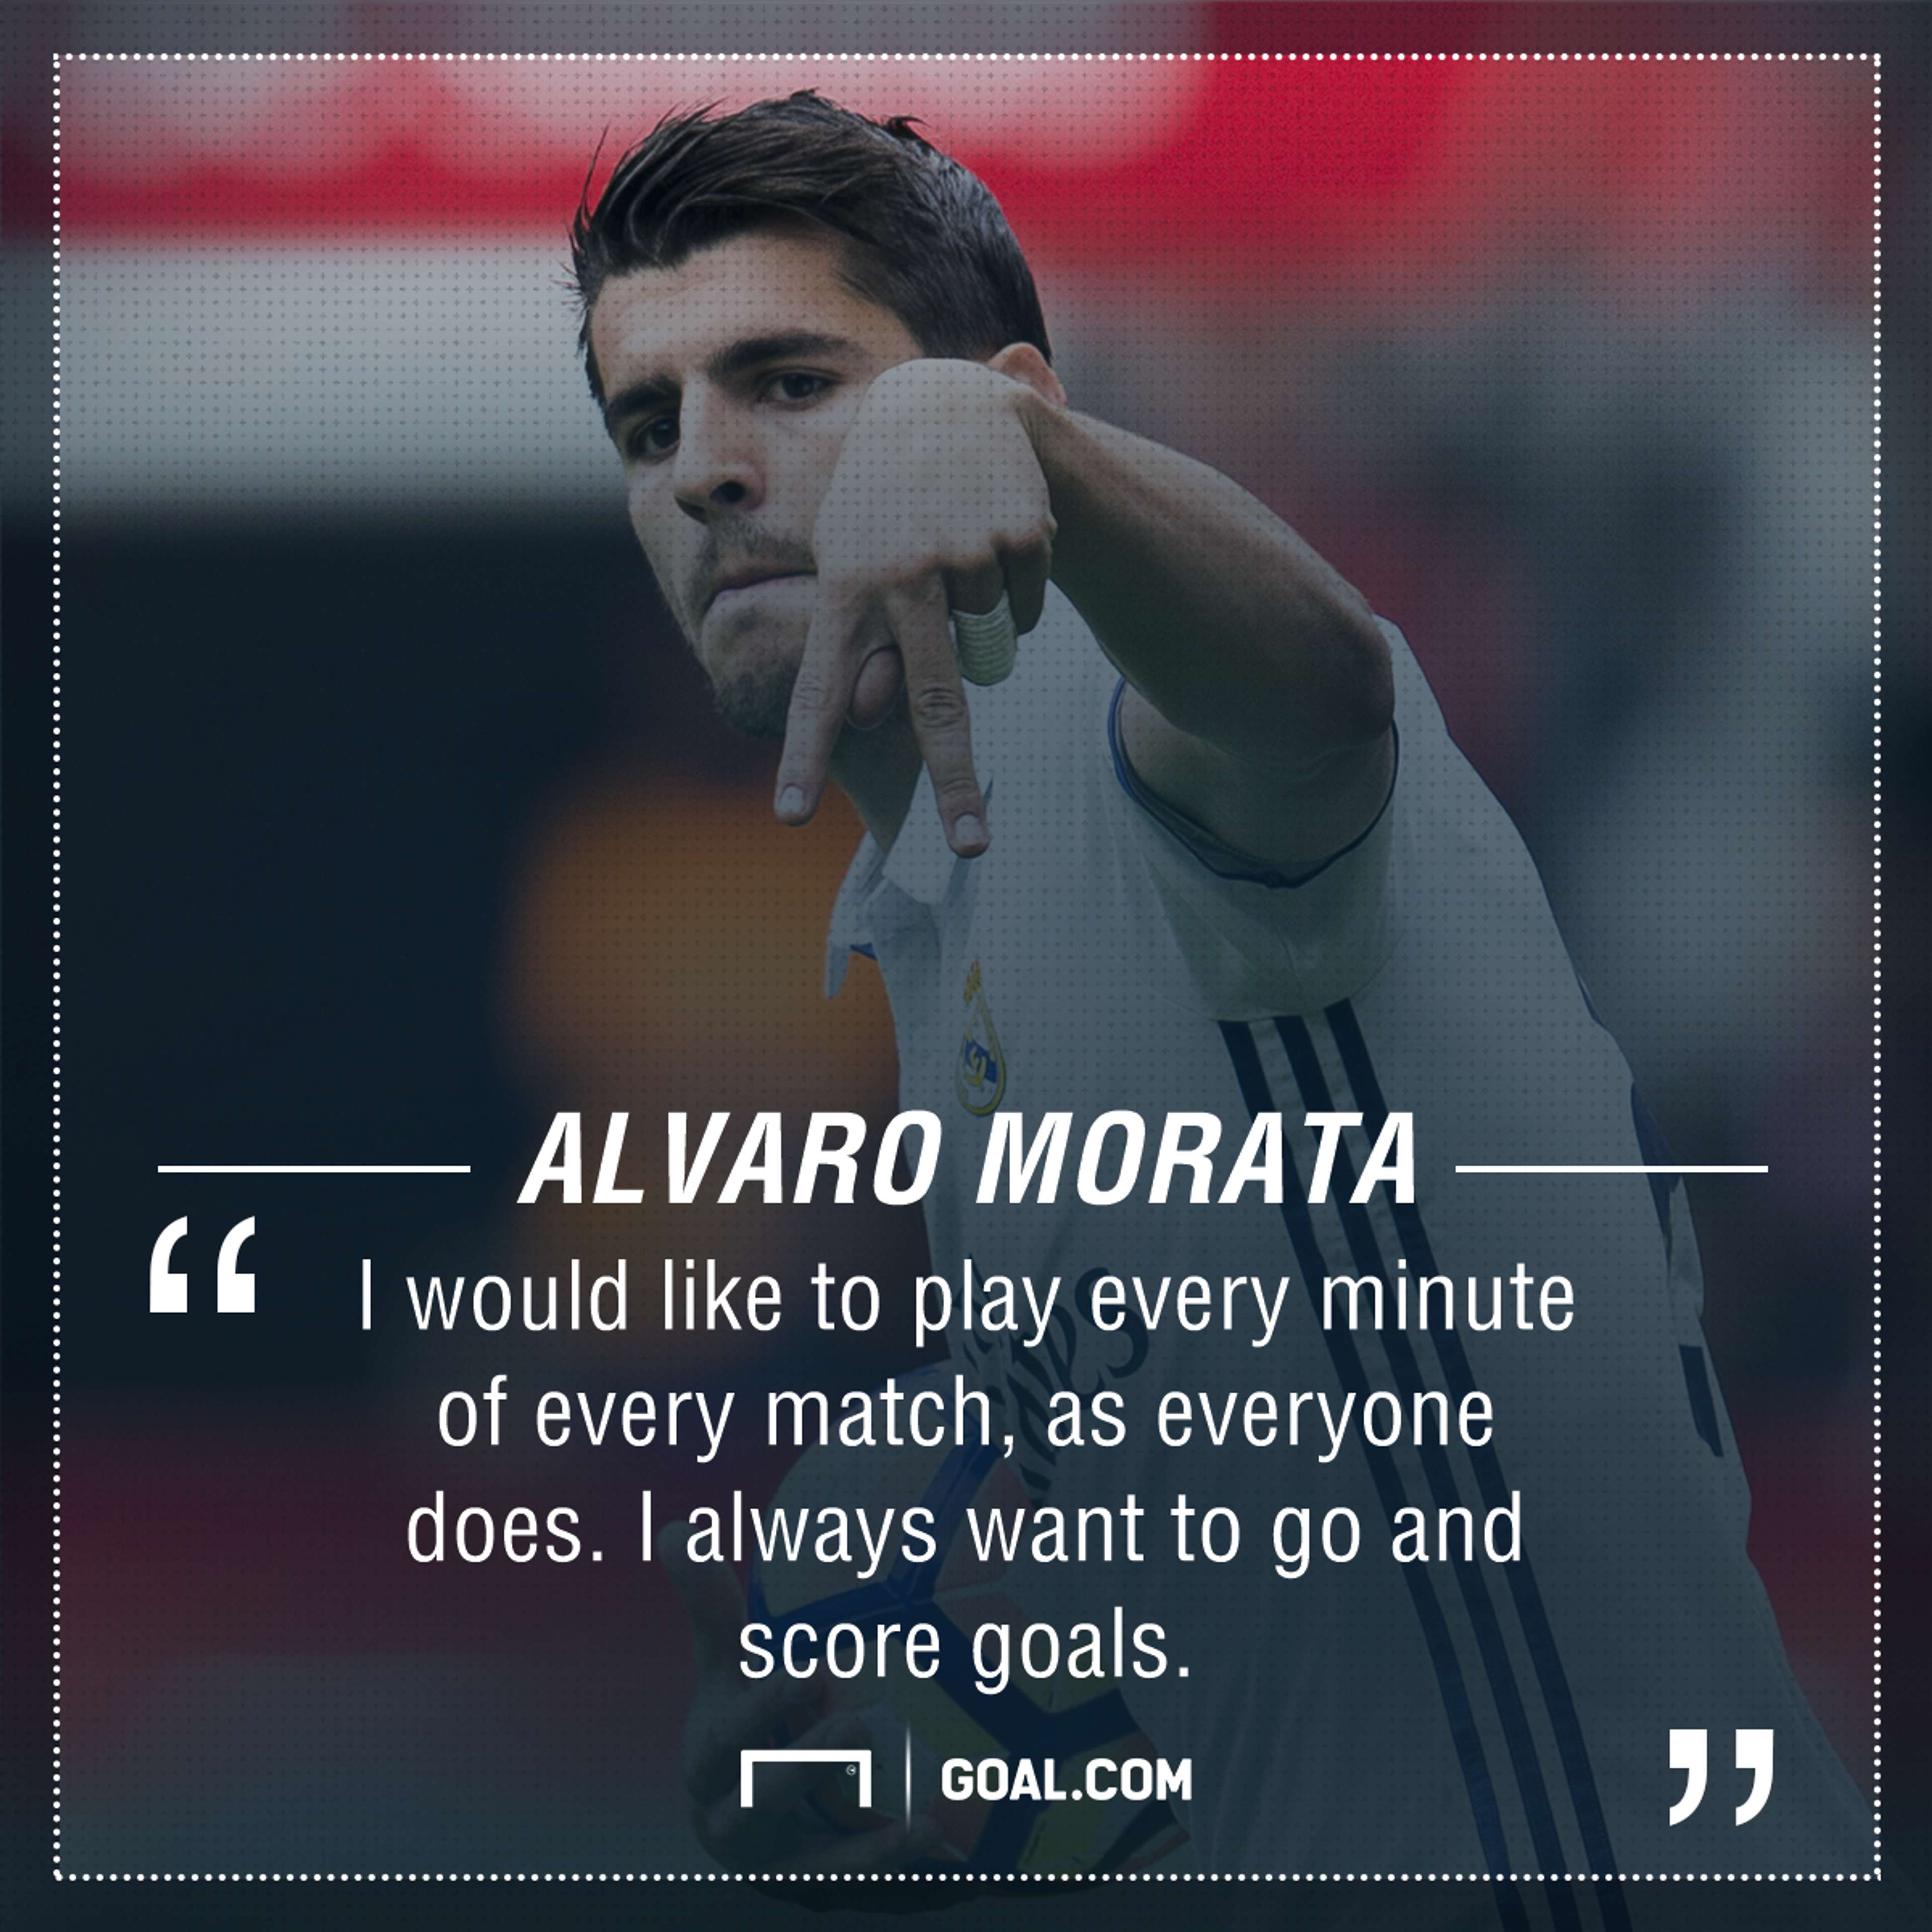 Alvaro Morata goals game time